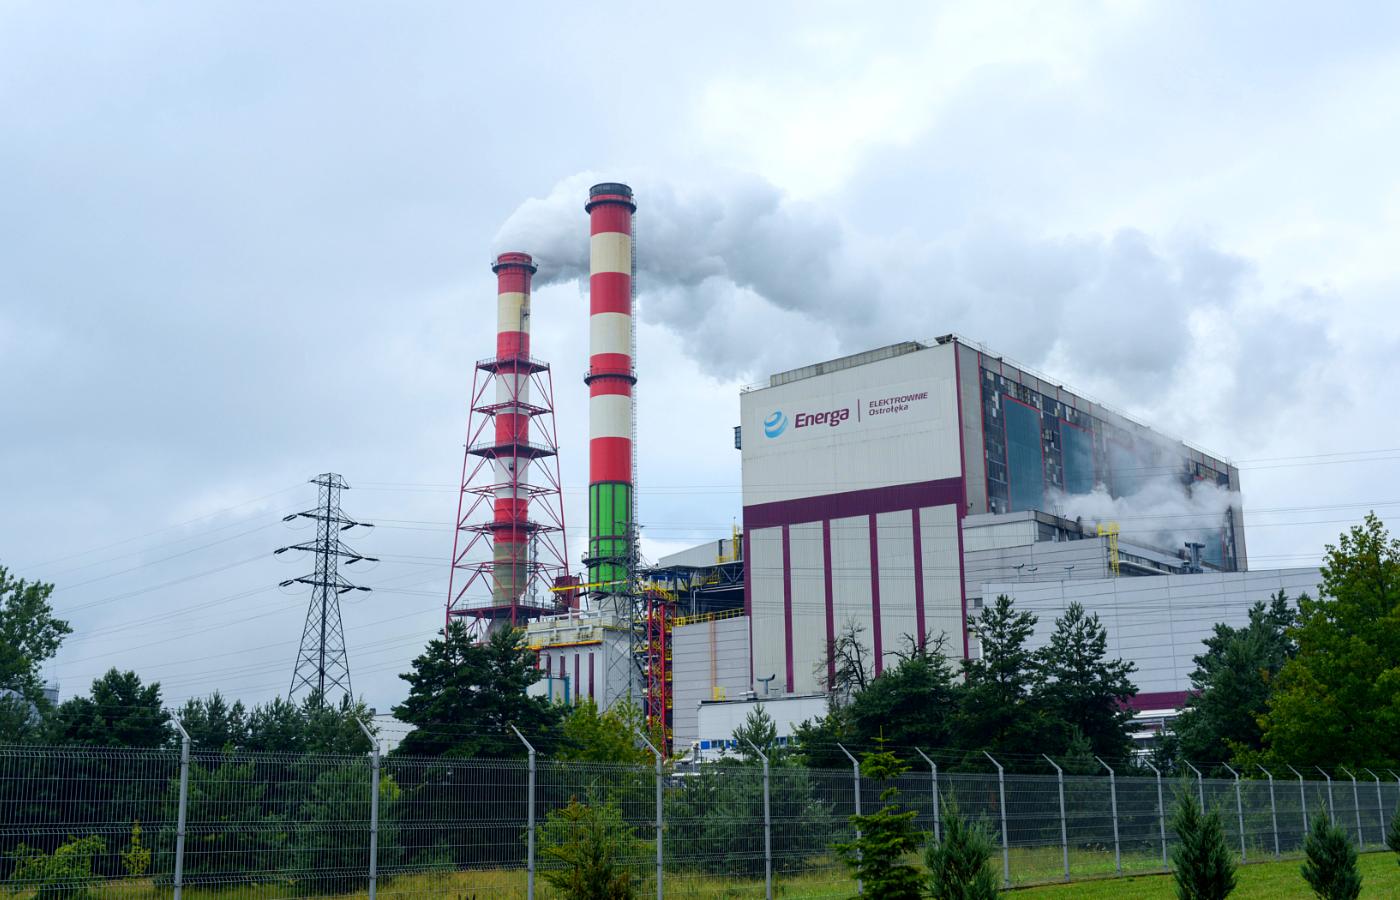 Elektrownia Ostrołęka SA to spółka należąca do Energi i Enei, zajmująca się budową nowego bloku o mocy 1000 MW Ostrołęka C.